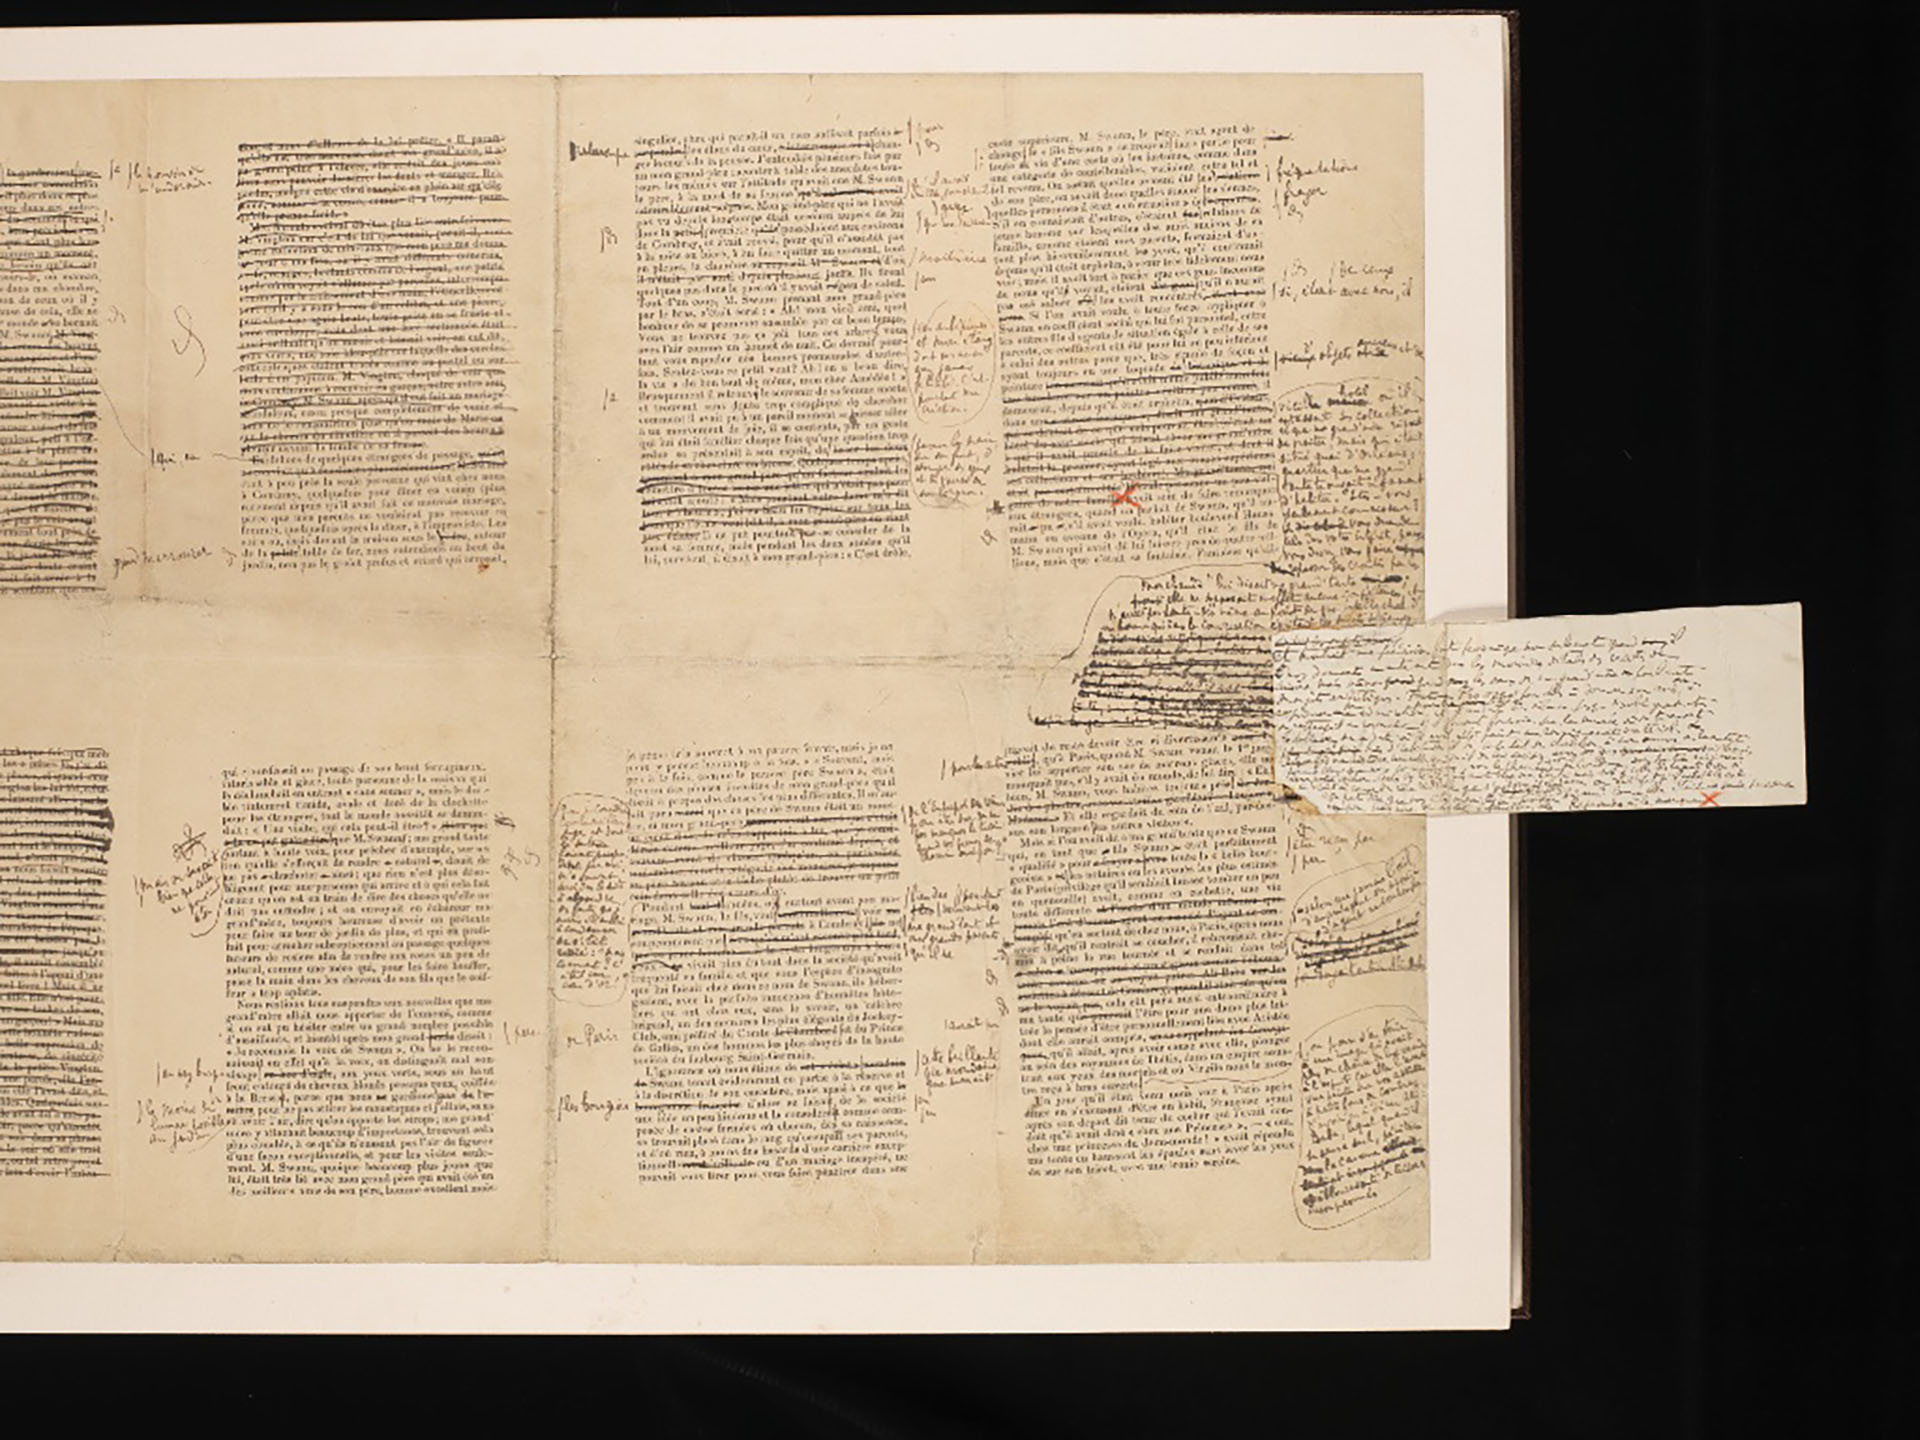 Los manuscritos de Marcel Proust y las correcciones de "Por el camino de Swann", el primer volúmen de "En busca del tiempo perdido". 